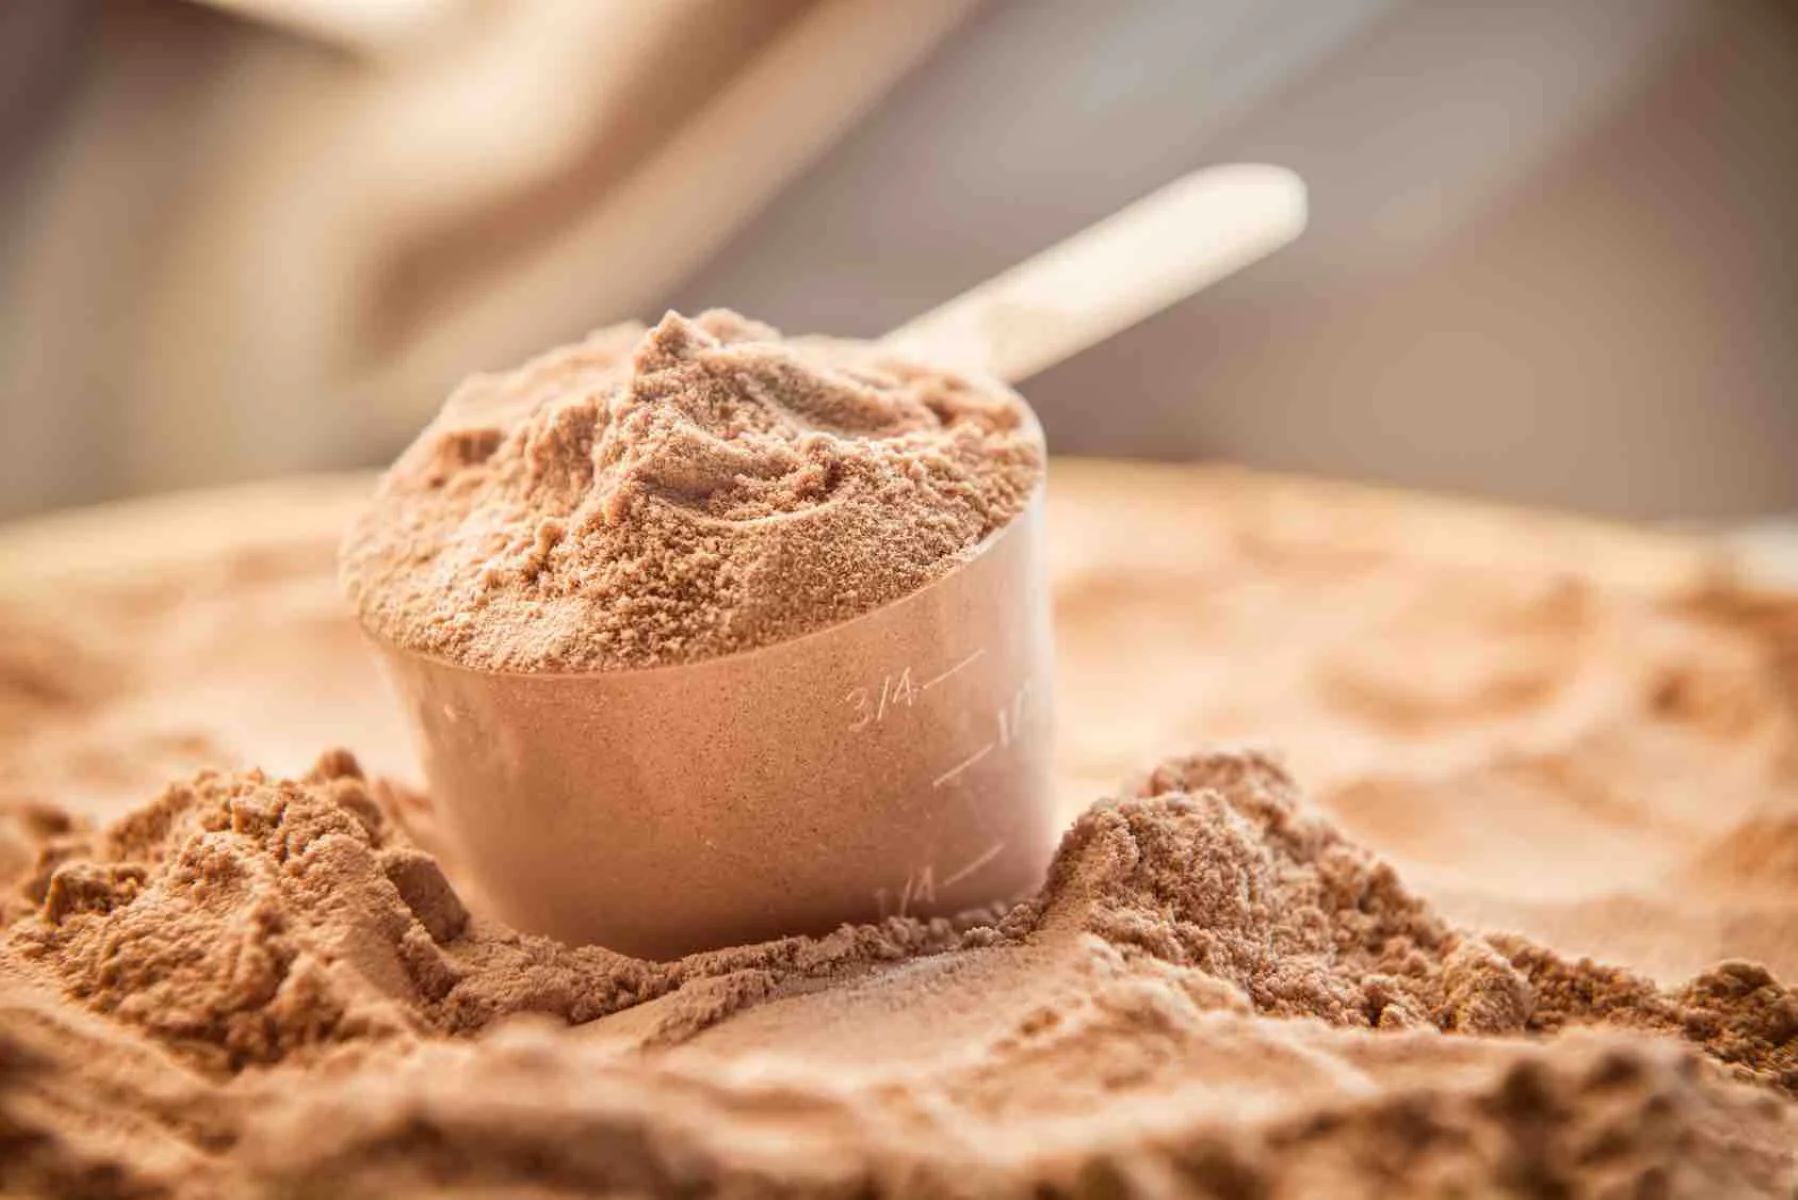 The Ultimate Protein Powder: 100% Pure, Zero Carbs, Zero Fat!